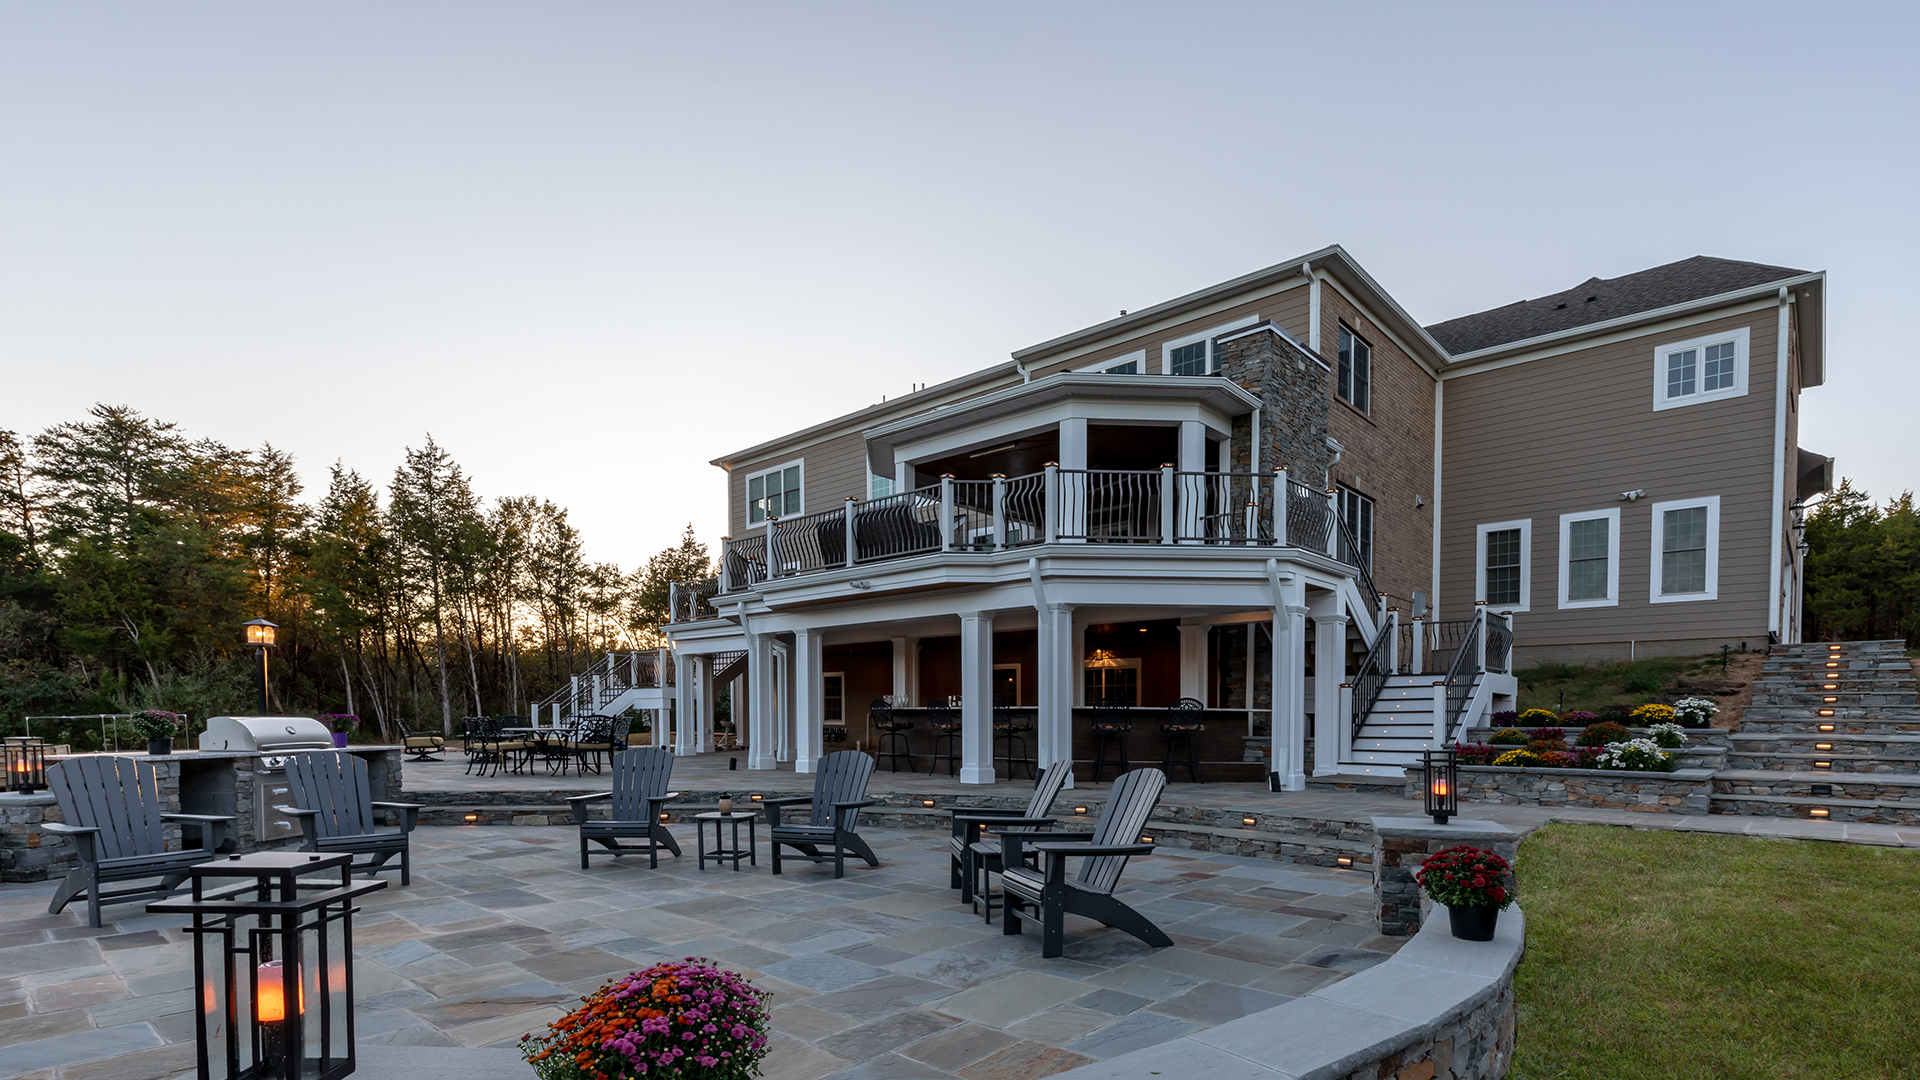 2020 NARI Capital CotY Merit Award Winner, Residential Landscape Design/ Outdoor Living over $250,000